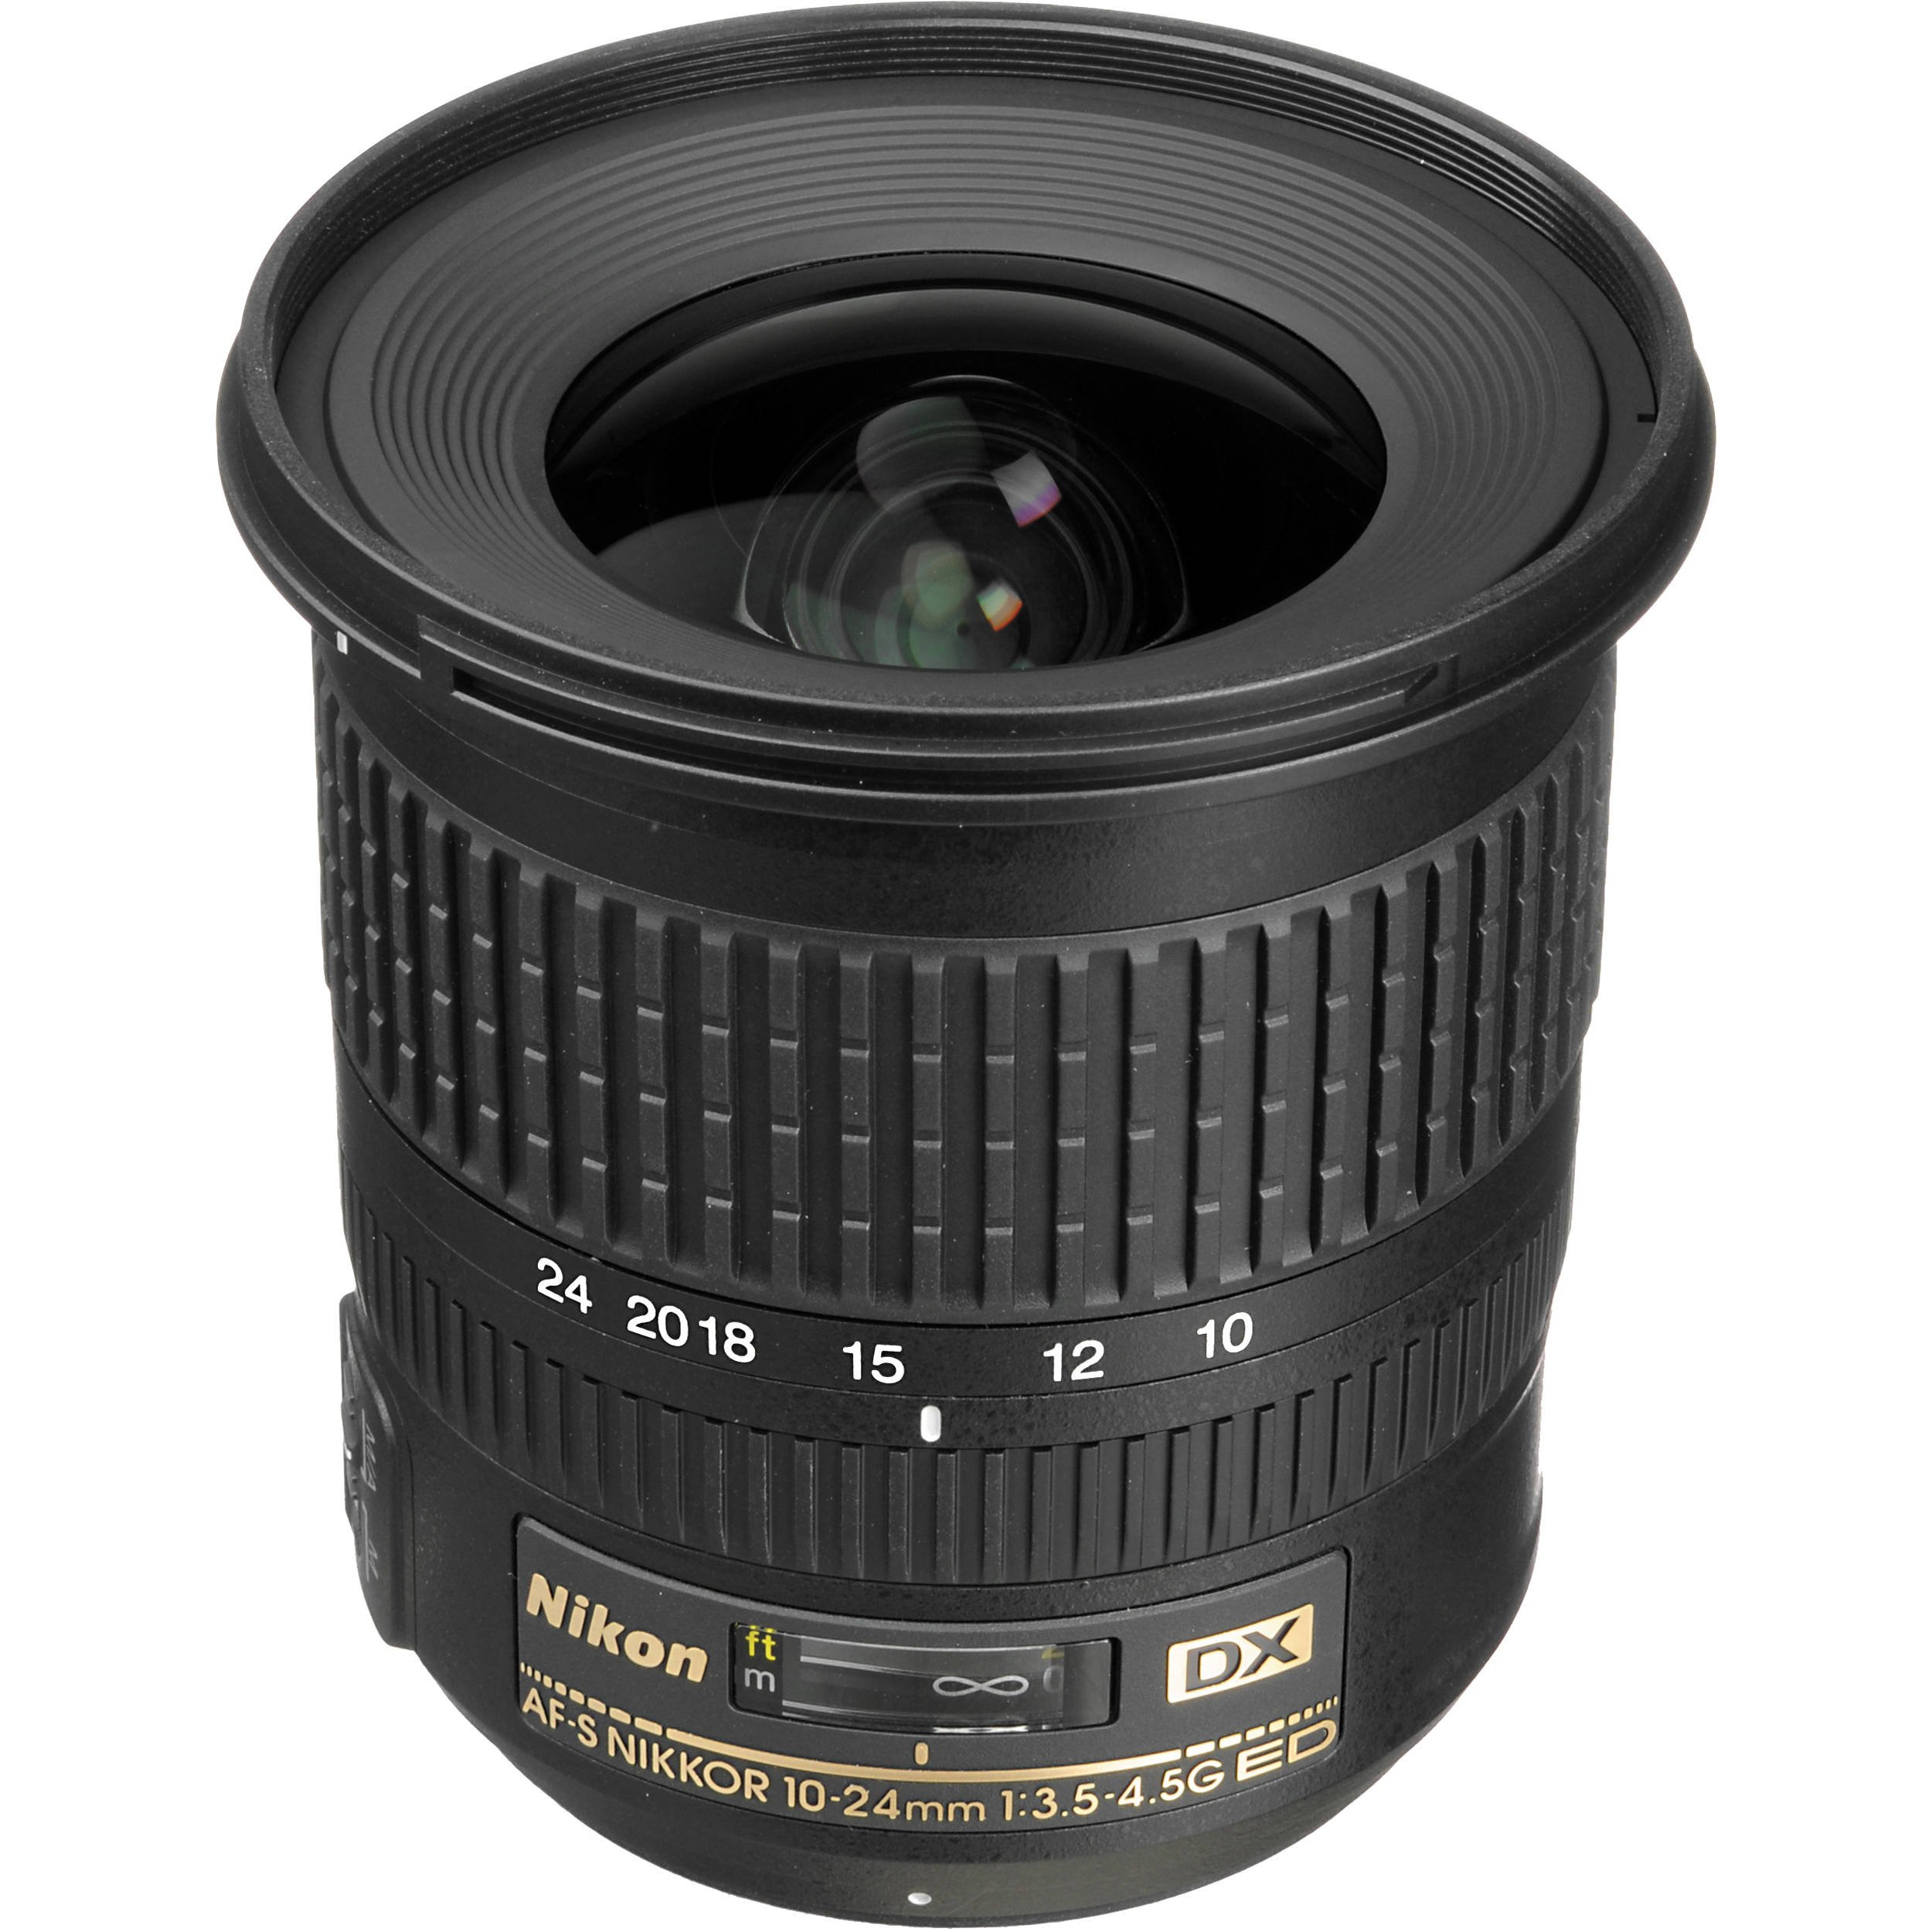 Nikon AF-S DX Nikkor 10-24mm 1:3,5-4,5G ED Objektiv (77 mm Filtergewinde) schwarz